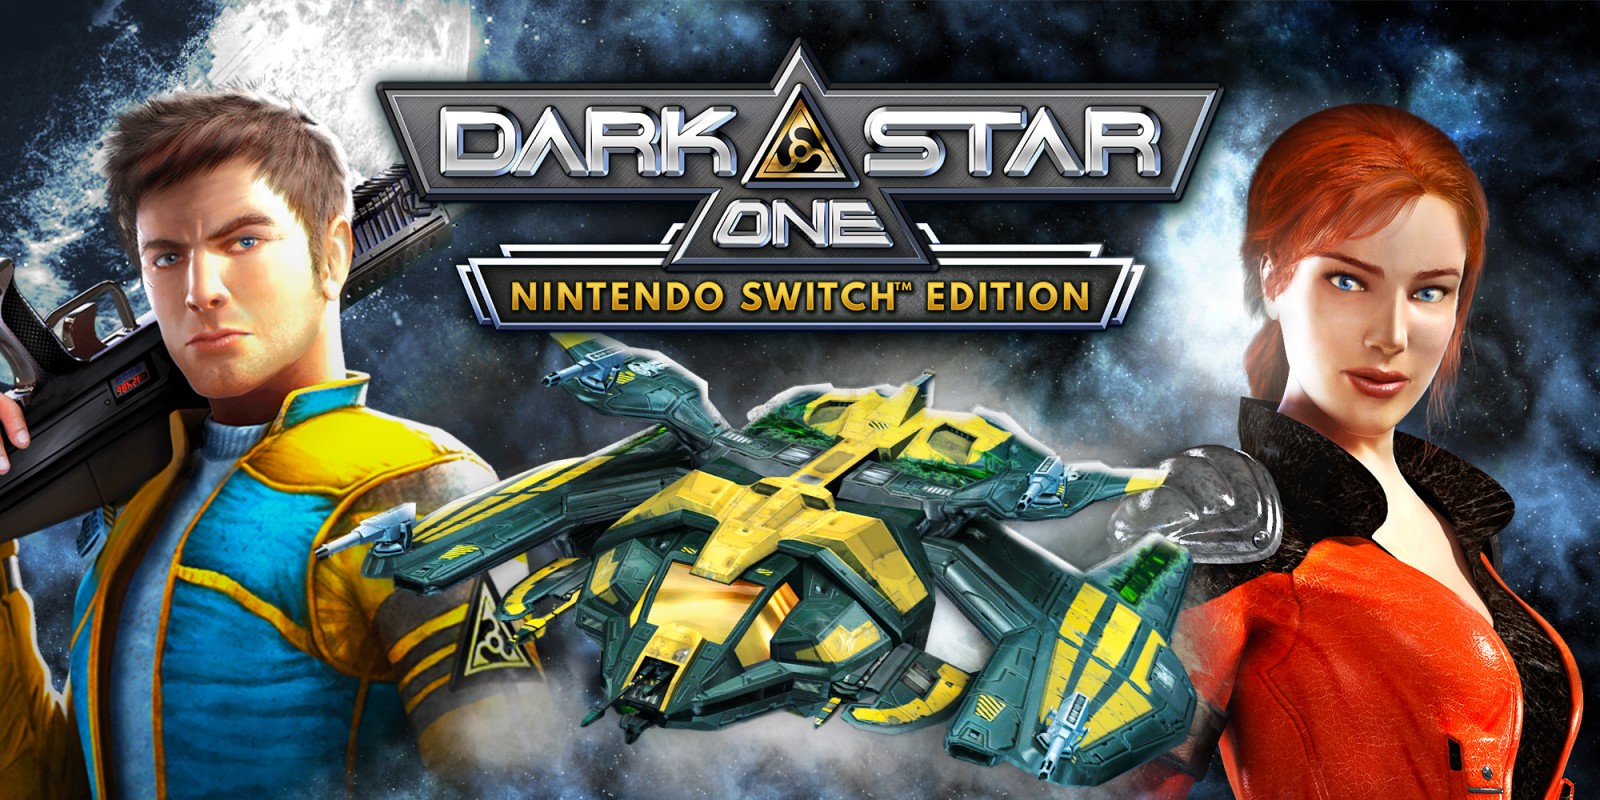 DarkStar-One-Nintendo-Switch-edition